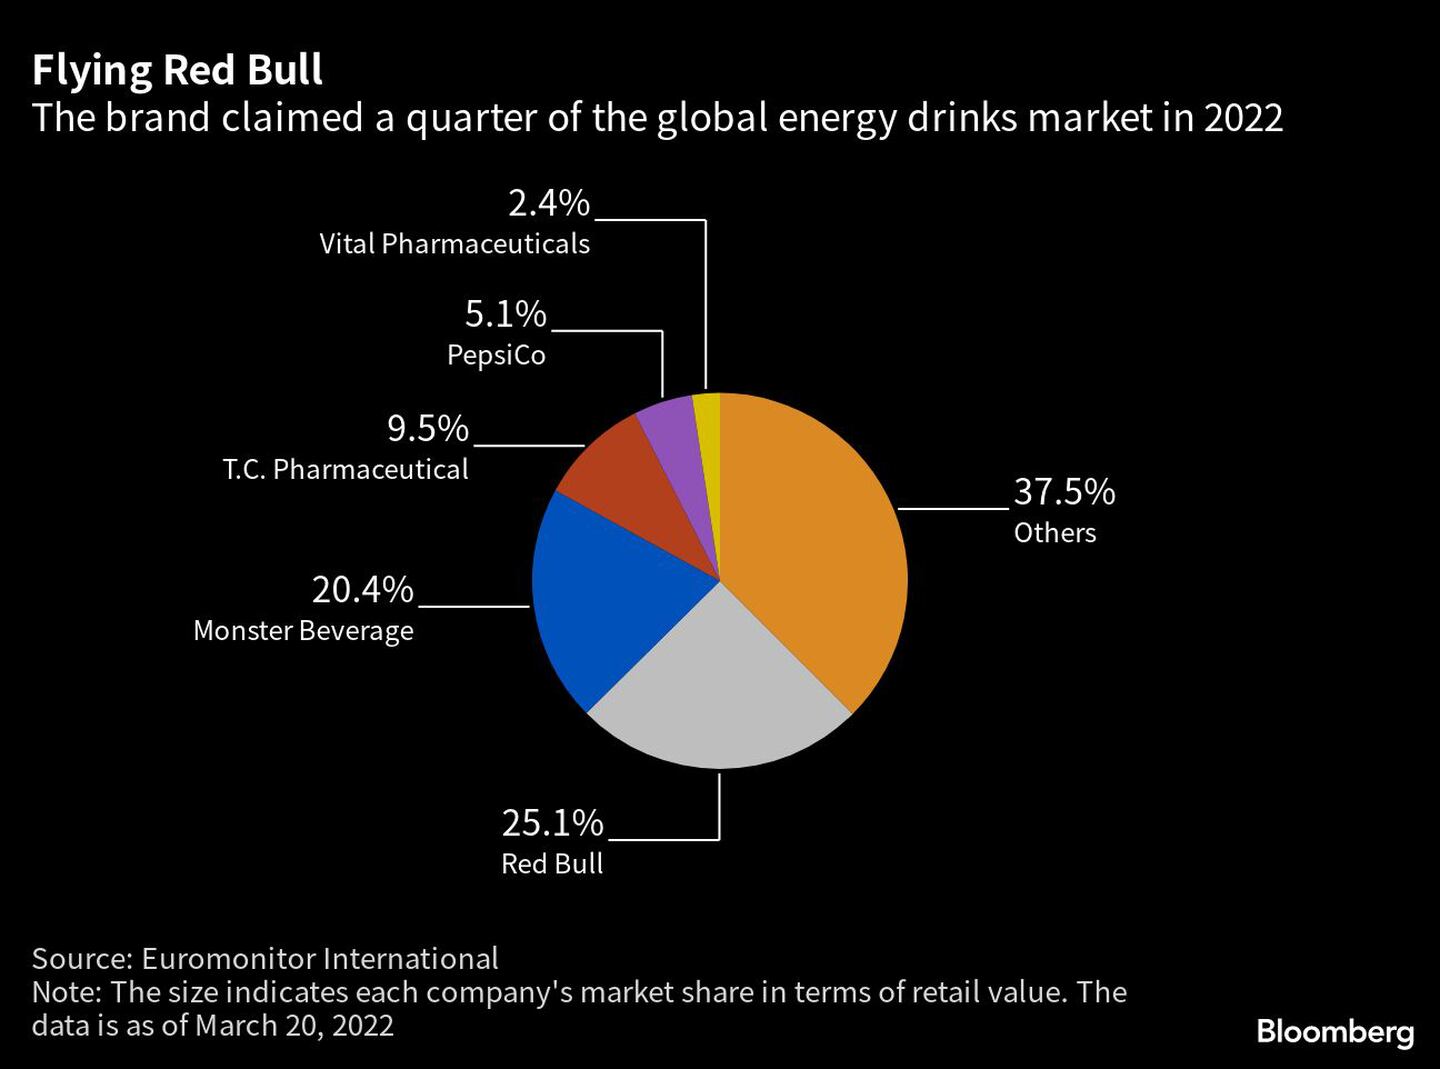 La marca se hizo con una cuarta parte del mercado mundial de bebidas energéticas en 2022dfd